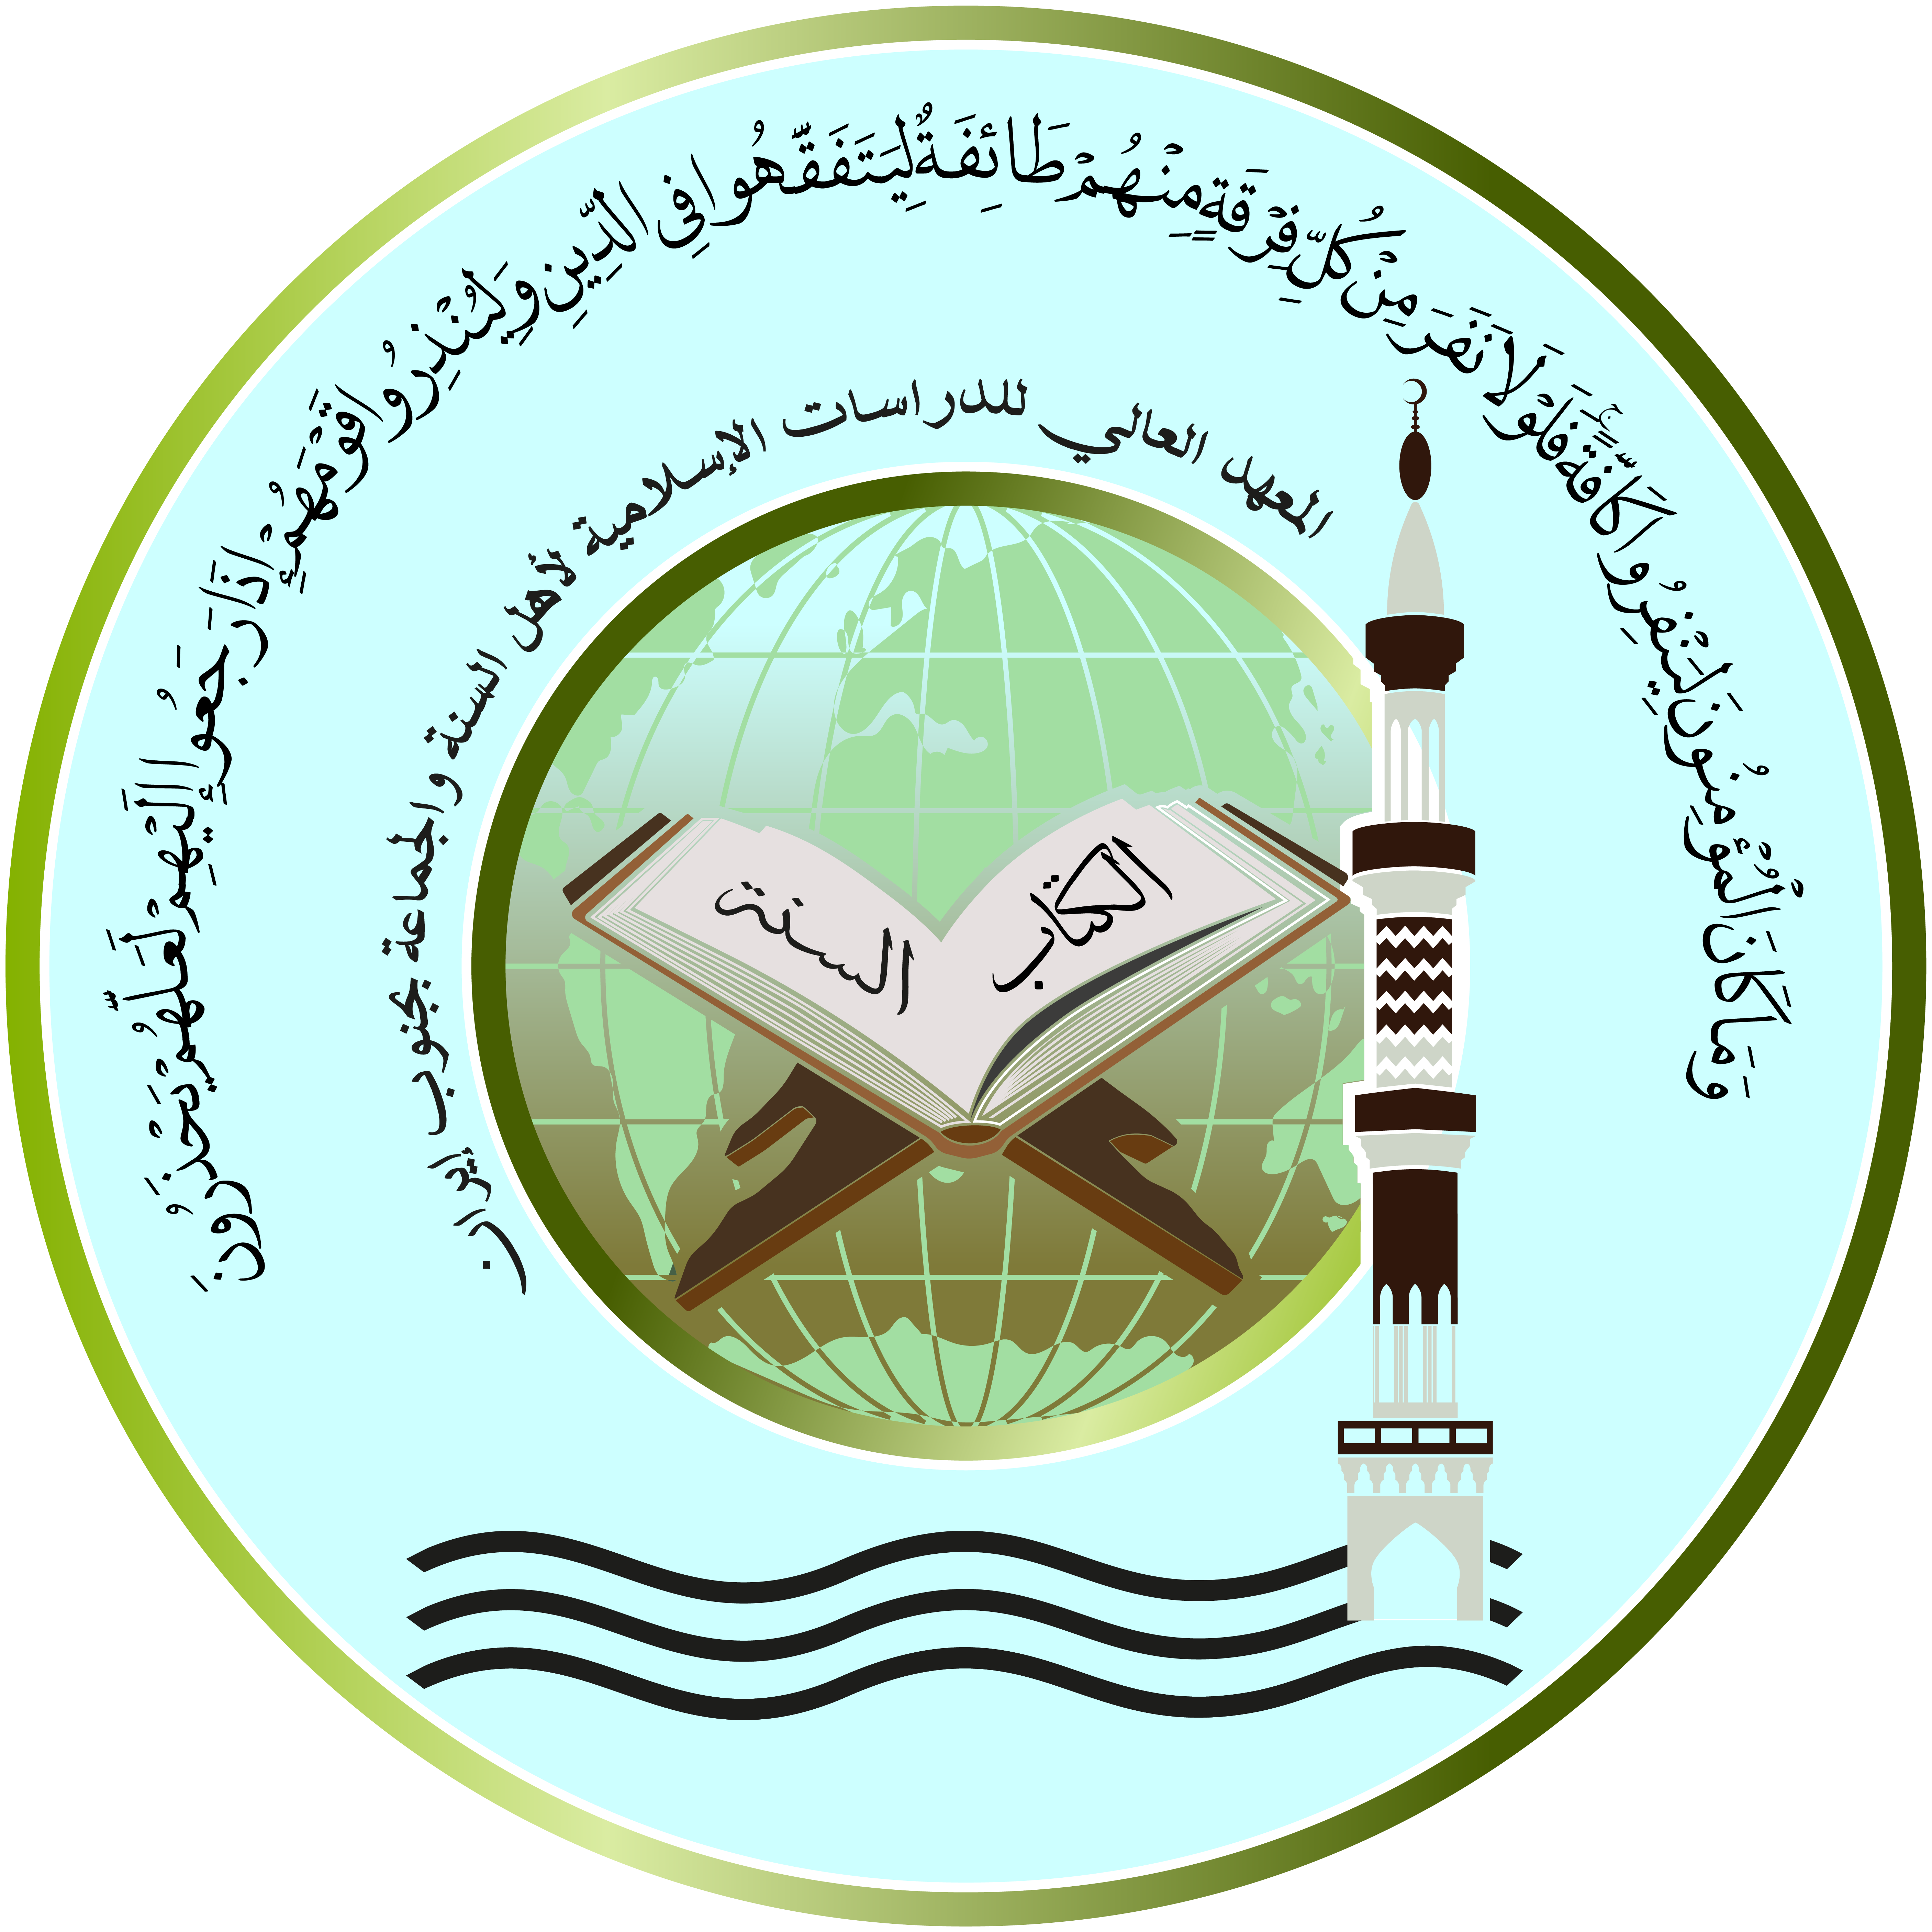 معهد عالی علوم اسلامی اهل سنت و جماعت جنوب ایران